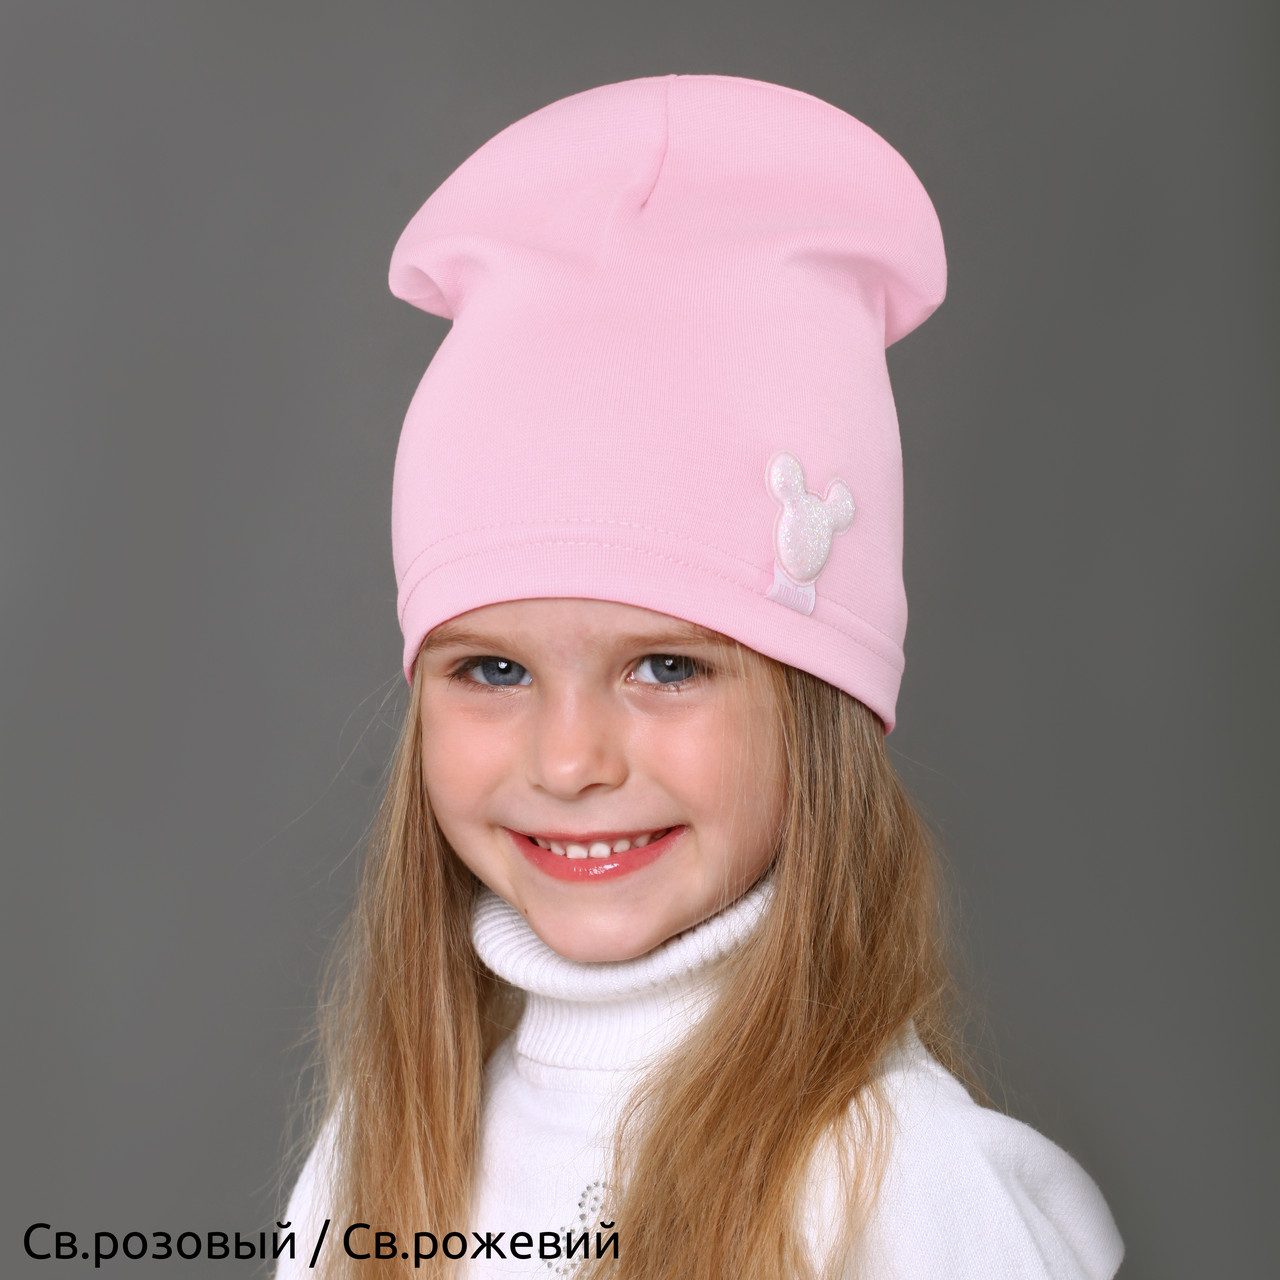 №212 Тонка трикотажна шапка Мінні для дівчинки р.46-50 (1-3 роки) і р. 50-54 см (3-7 років), фото 1